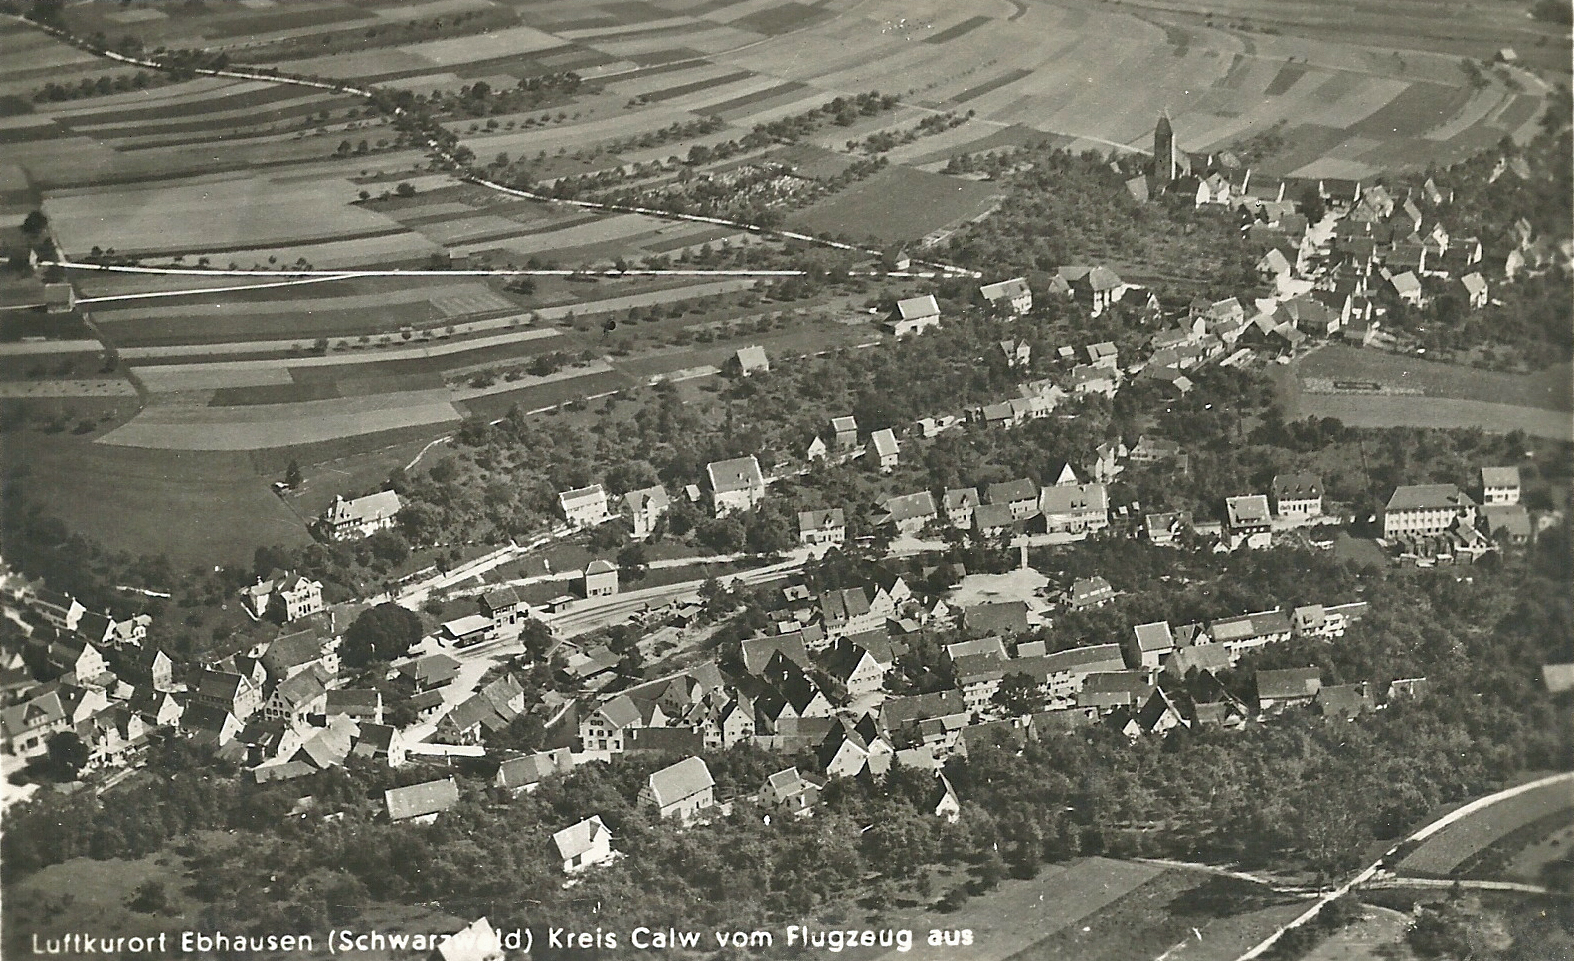 Ebhausen - Luftbild 1930er Jahre - Fotosammlung G Schmidt